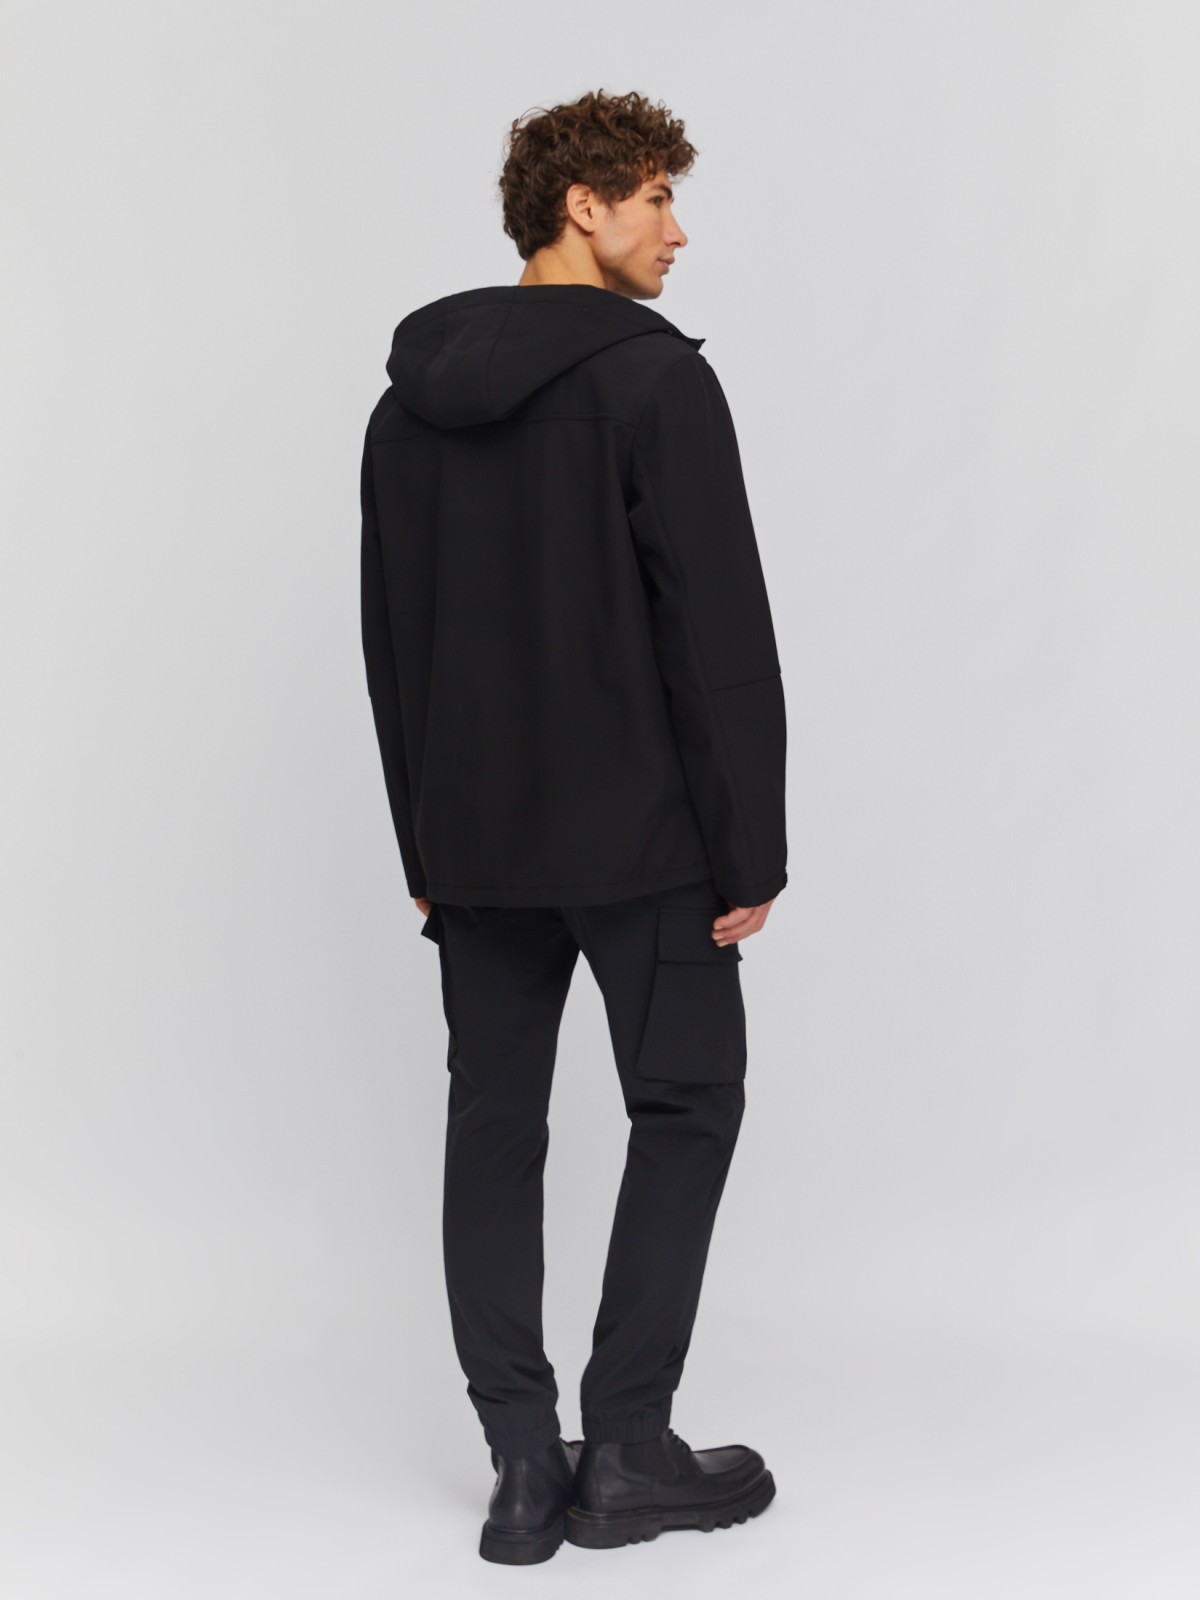 Лёгкая куртка-ветровка с капюшоном zolla 014135602014, цвет черный, размер M - фото 6